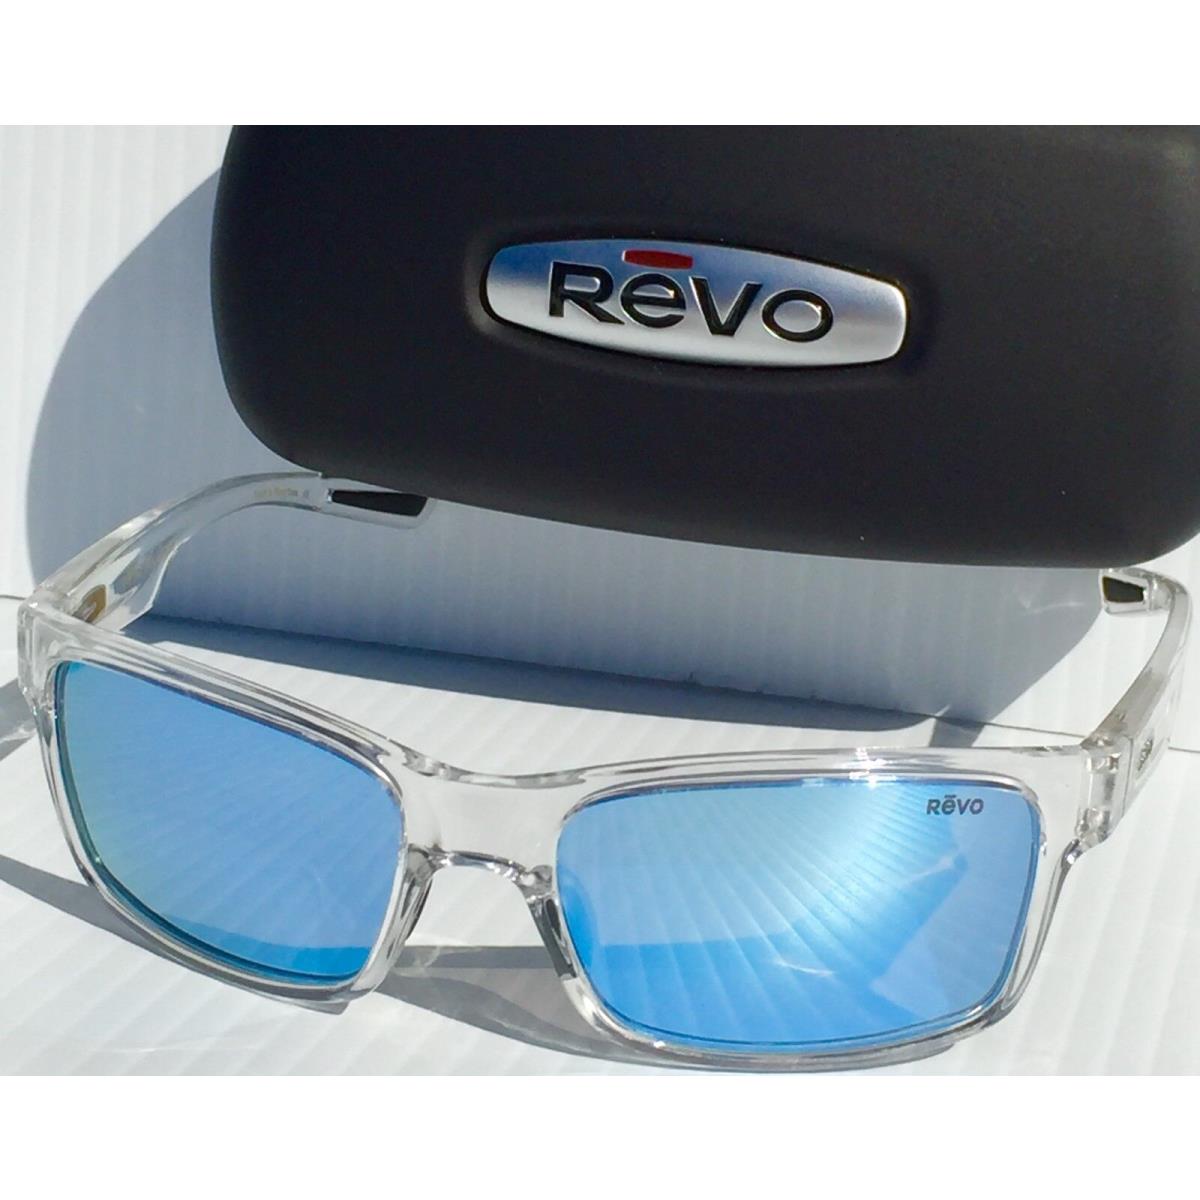 Revo sunglasses Crawler - Clear Frame, Blue Lens